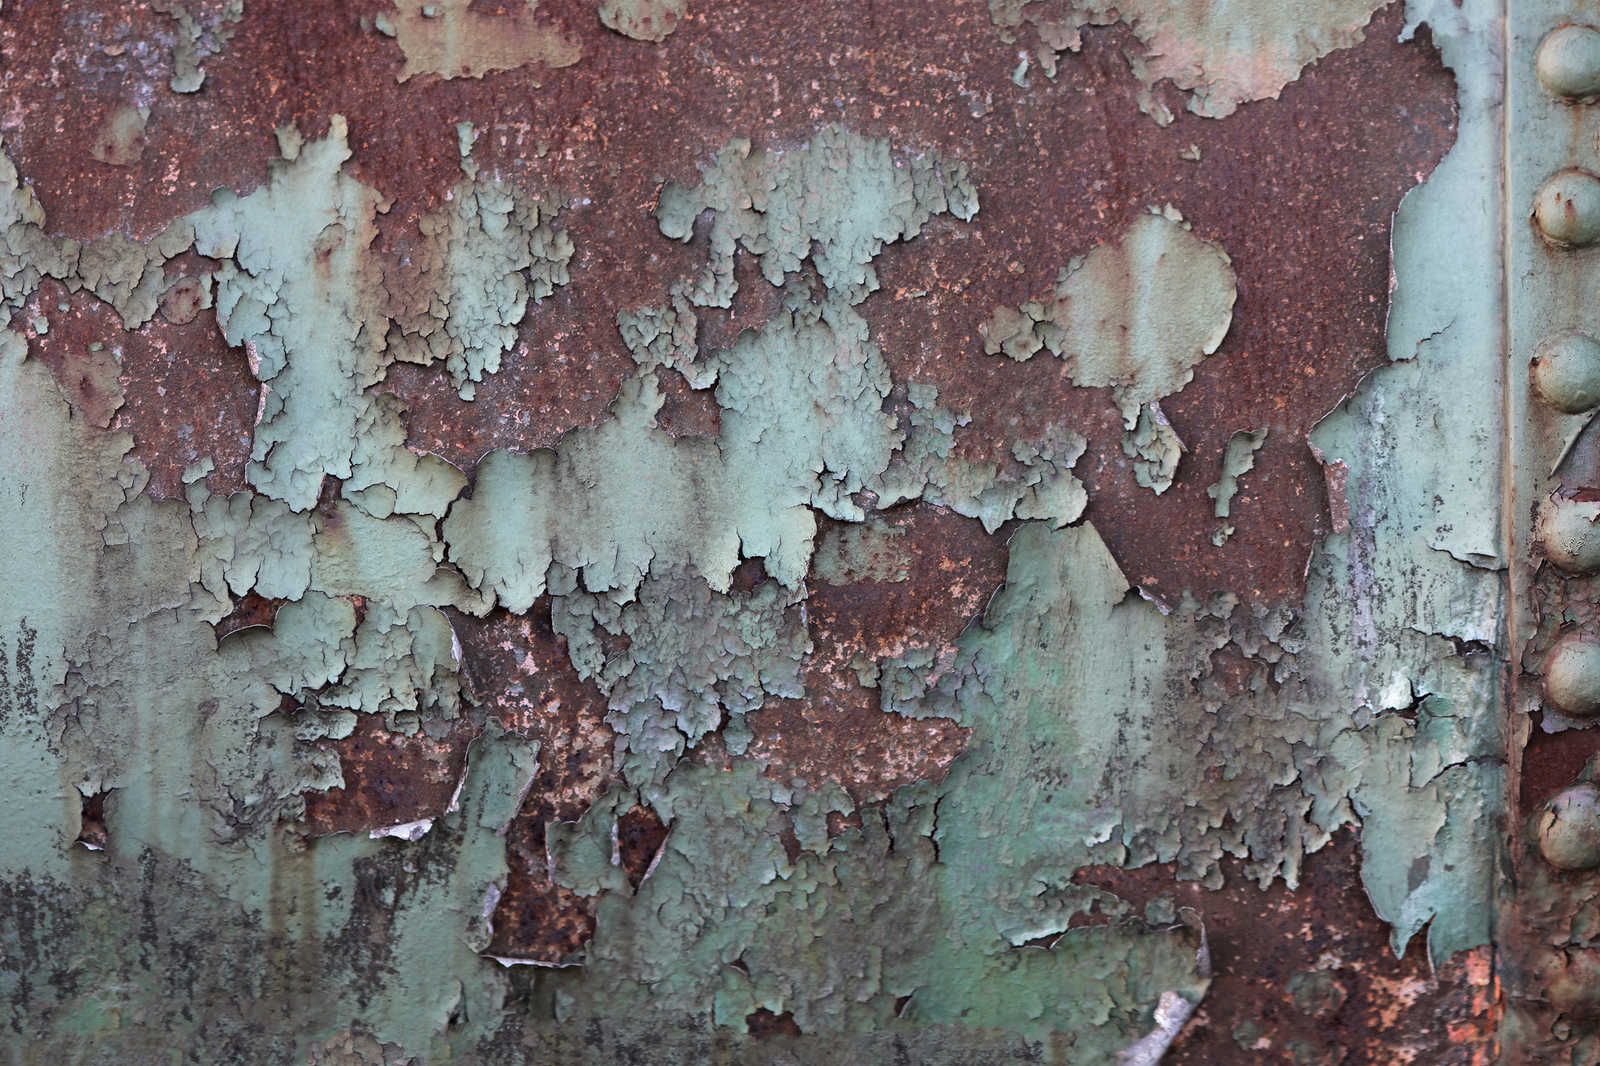             Canvas schilderij roestende scheepswand - metalen plaat met roest - 0,90 m x 0,60 m
        